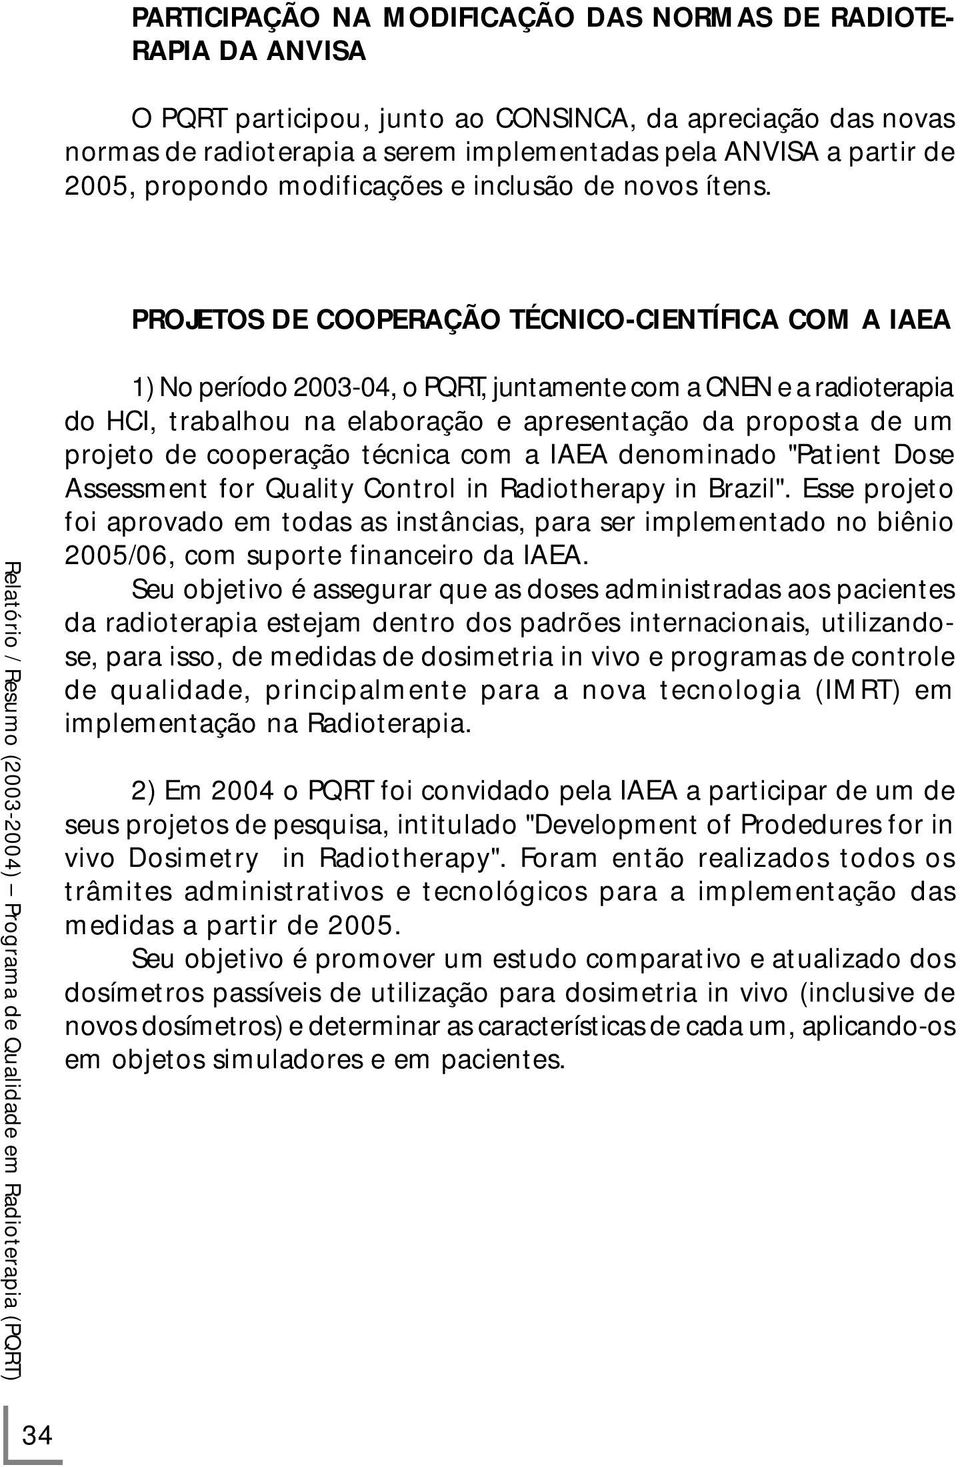 PROJETOS DE COOPERAÇÃO TÉCNICO-CIENTÍFICA COM A IAEA 1) No período 2003-04, o PQRT, juntamente com a CNEN e a radioterapia do HCI, trabalhou na elaboração e apresentação da proposta de um projeto de